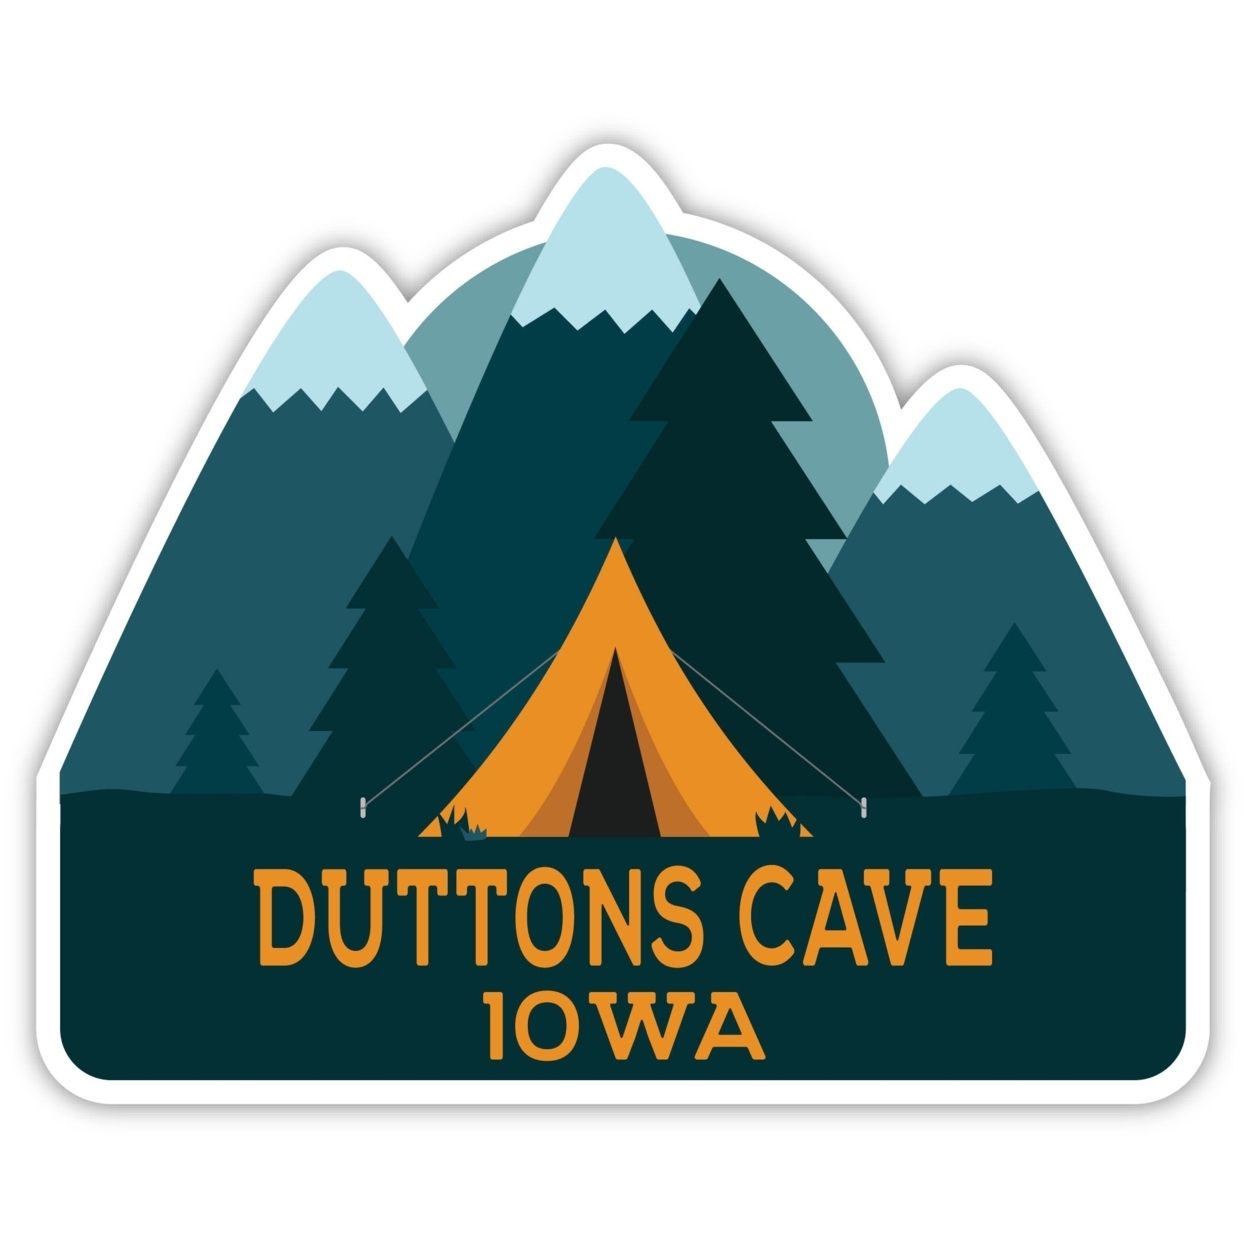 Duttons Cave Iowa Souvenir Decorative Stickers (Choose Theme And Size) - Single Unit, 12-Inch, Tent